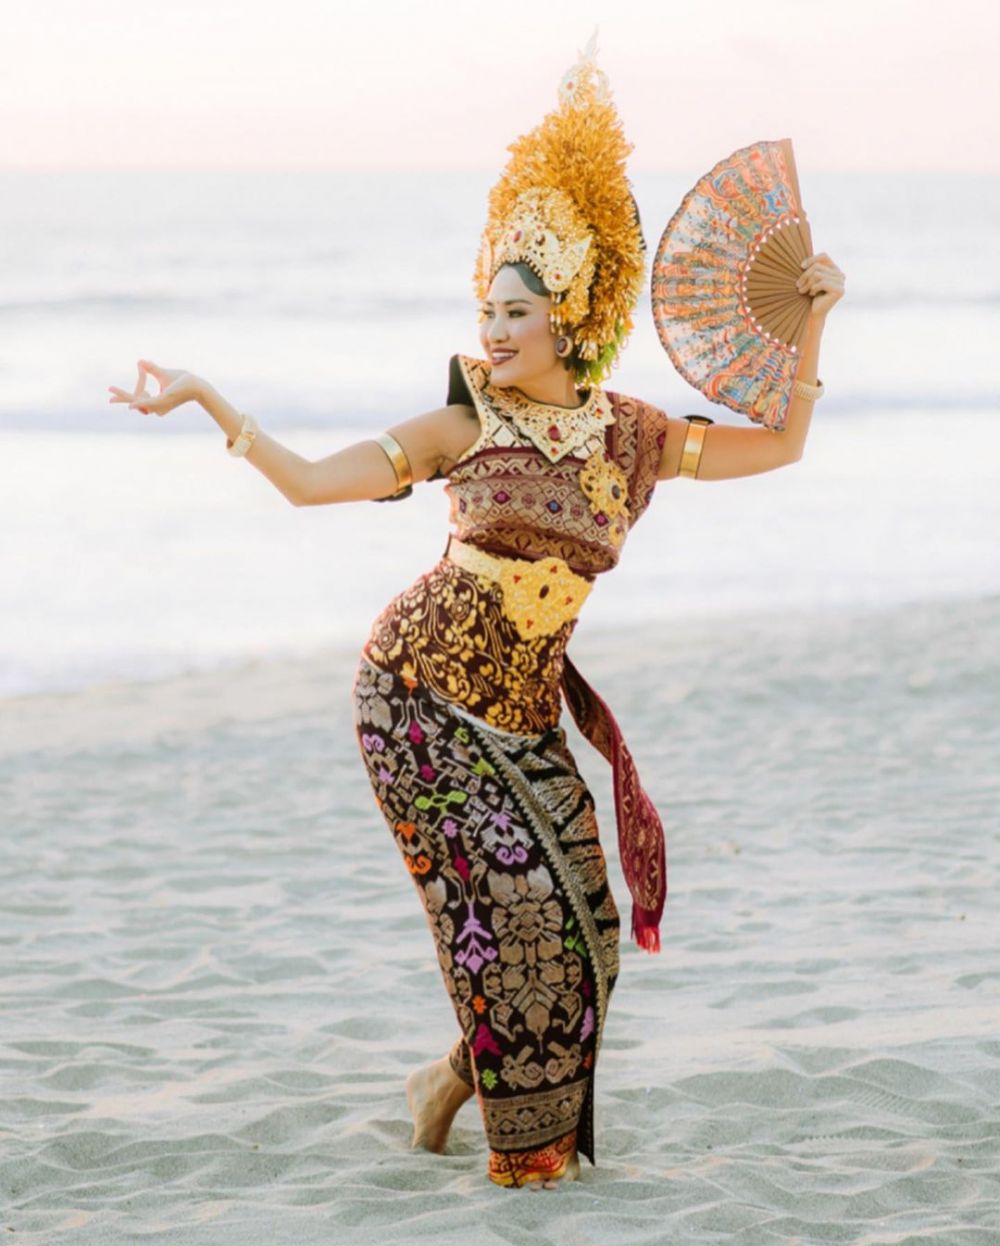 Pemotretan 10 seleb cantik dengan busana adat Bali, memesona